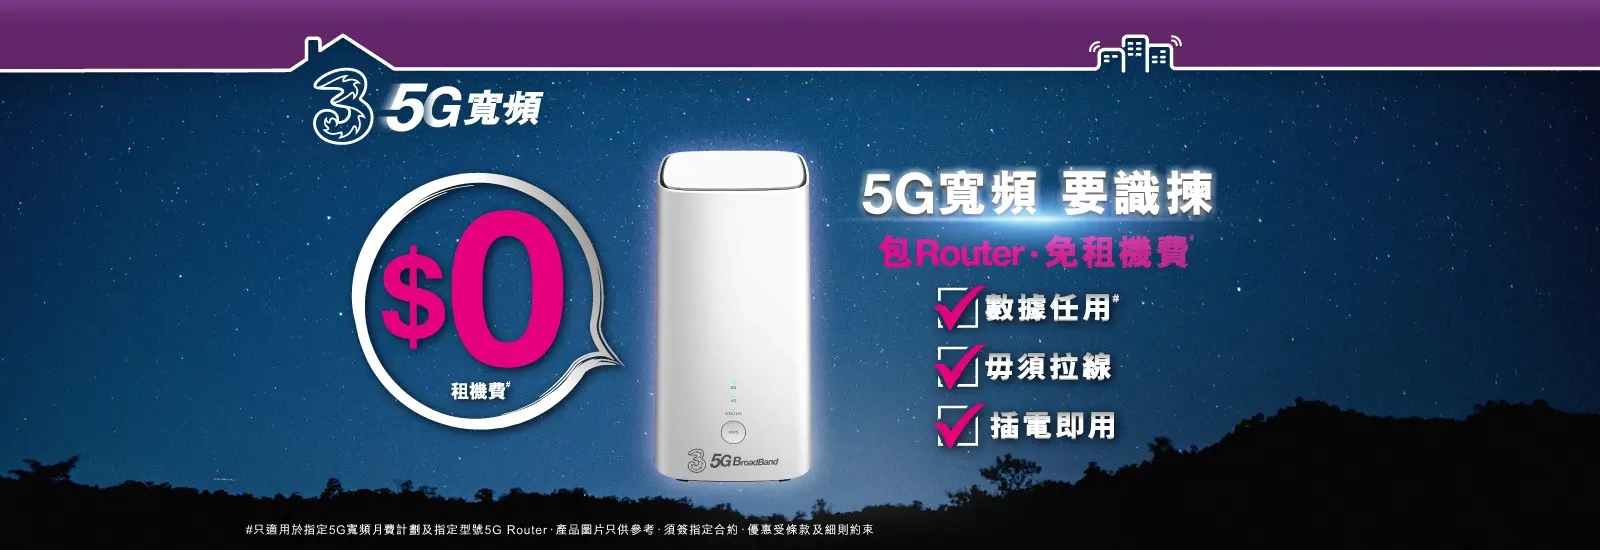 傳統固網問題多多？係時候棄固網，轉用5G寬頻喇！居屋及公屋住戶在2022年8月31日前登記3香港5G 限時寬頻優惠，即可每月$88享用5G寬頻任用連特選5G Wi-Fi Router 或 +$38/月享ZTE 5G CPE MC888 ! 立即申請，享用最神家居上網組合!